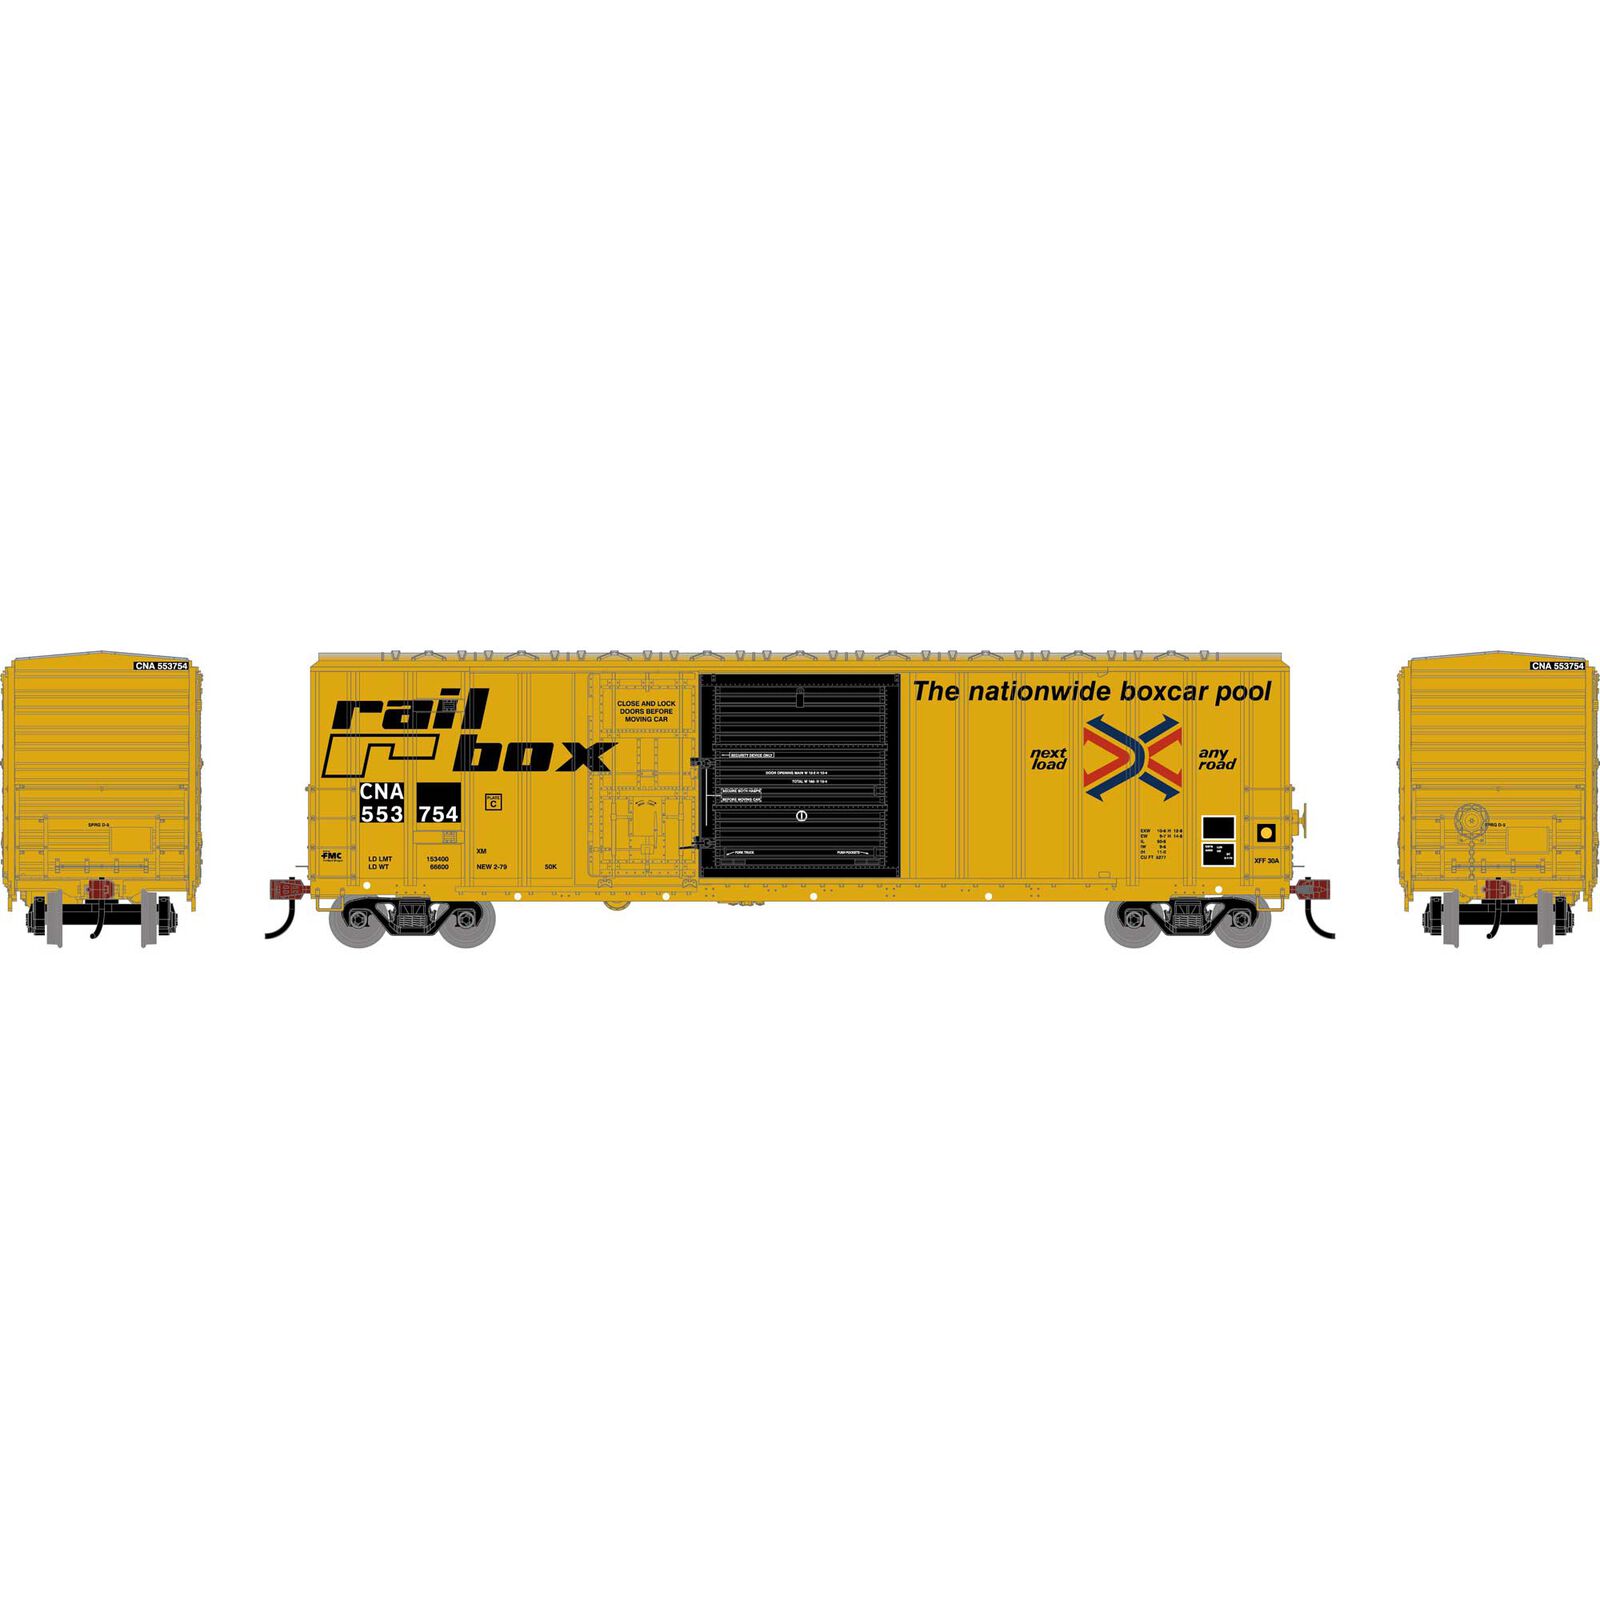 HO 50' FMC 5277 Combo Door Box Car, CNA 'Ex-Railbox' #553754